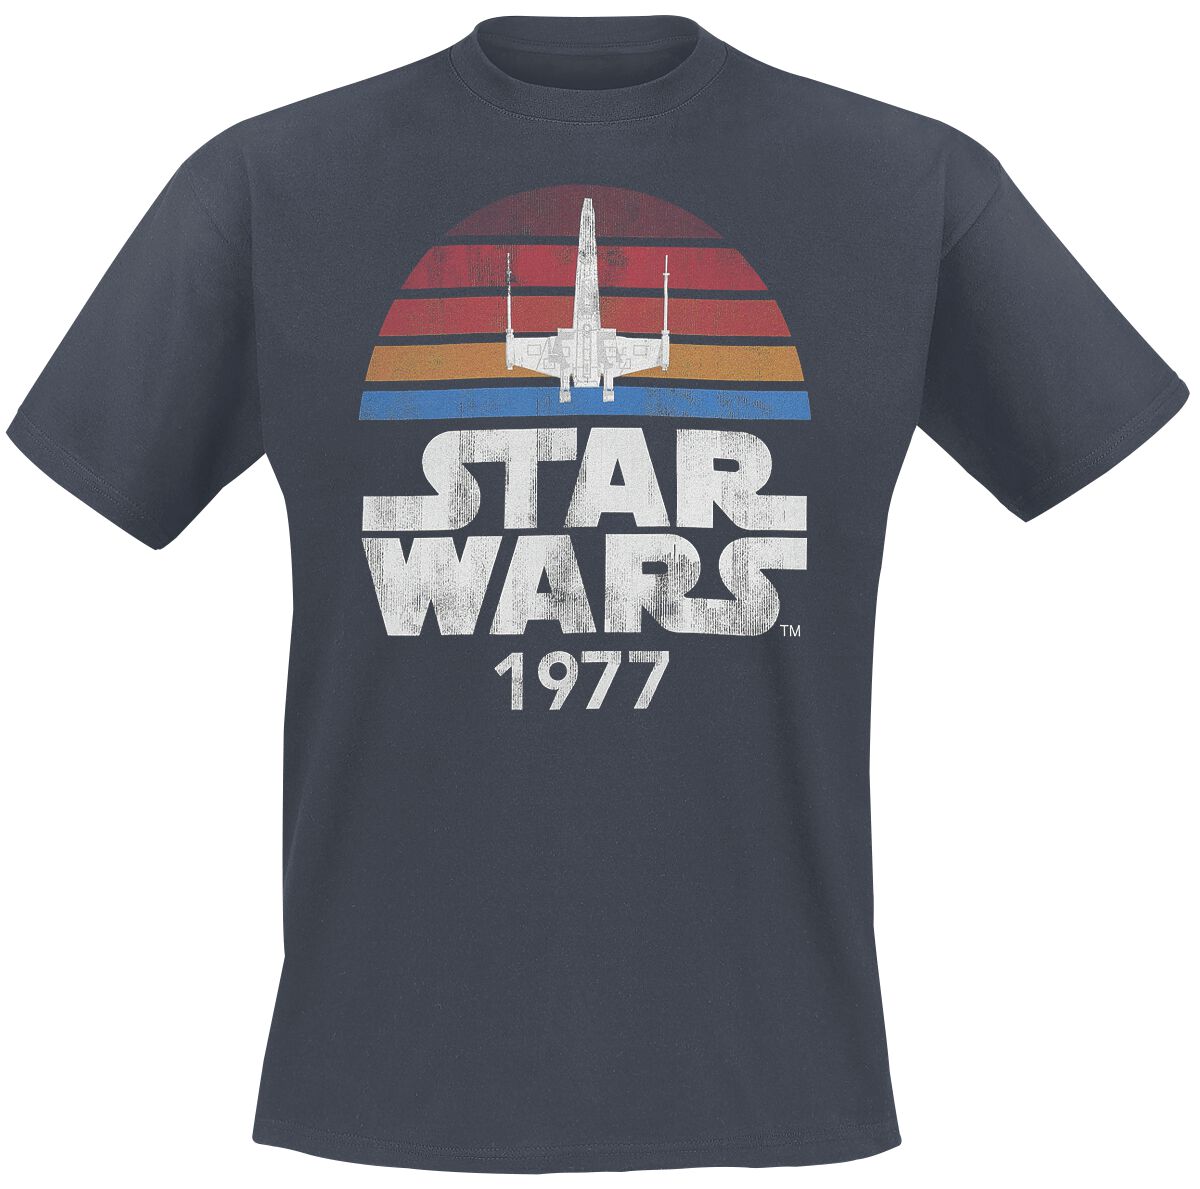 Star Wars T-Shirt - Since 1977 - S bis XXL - für Männer - Größe L - anthrazit  - Lizenzierter Fanartikel